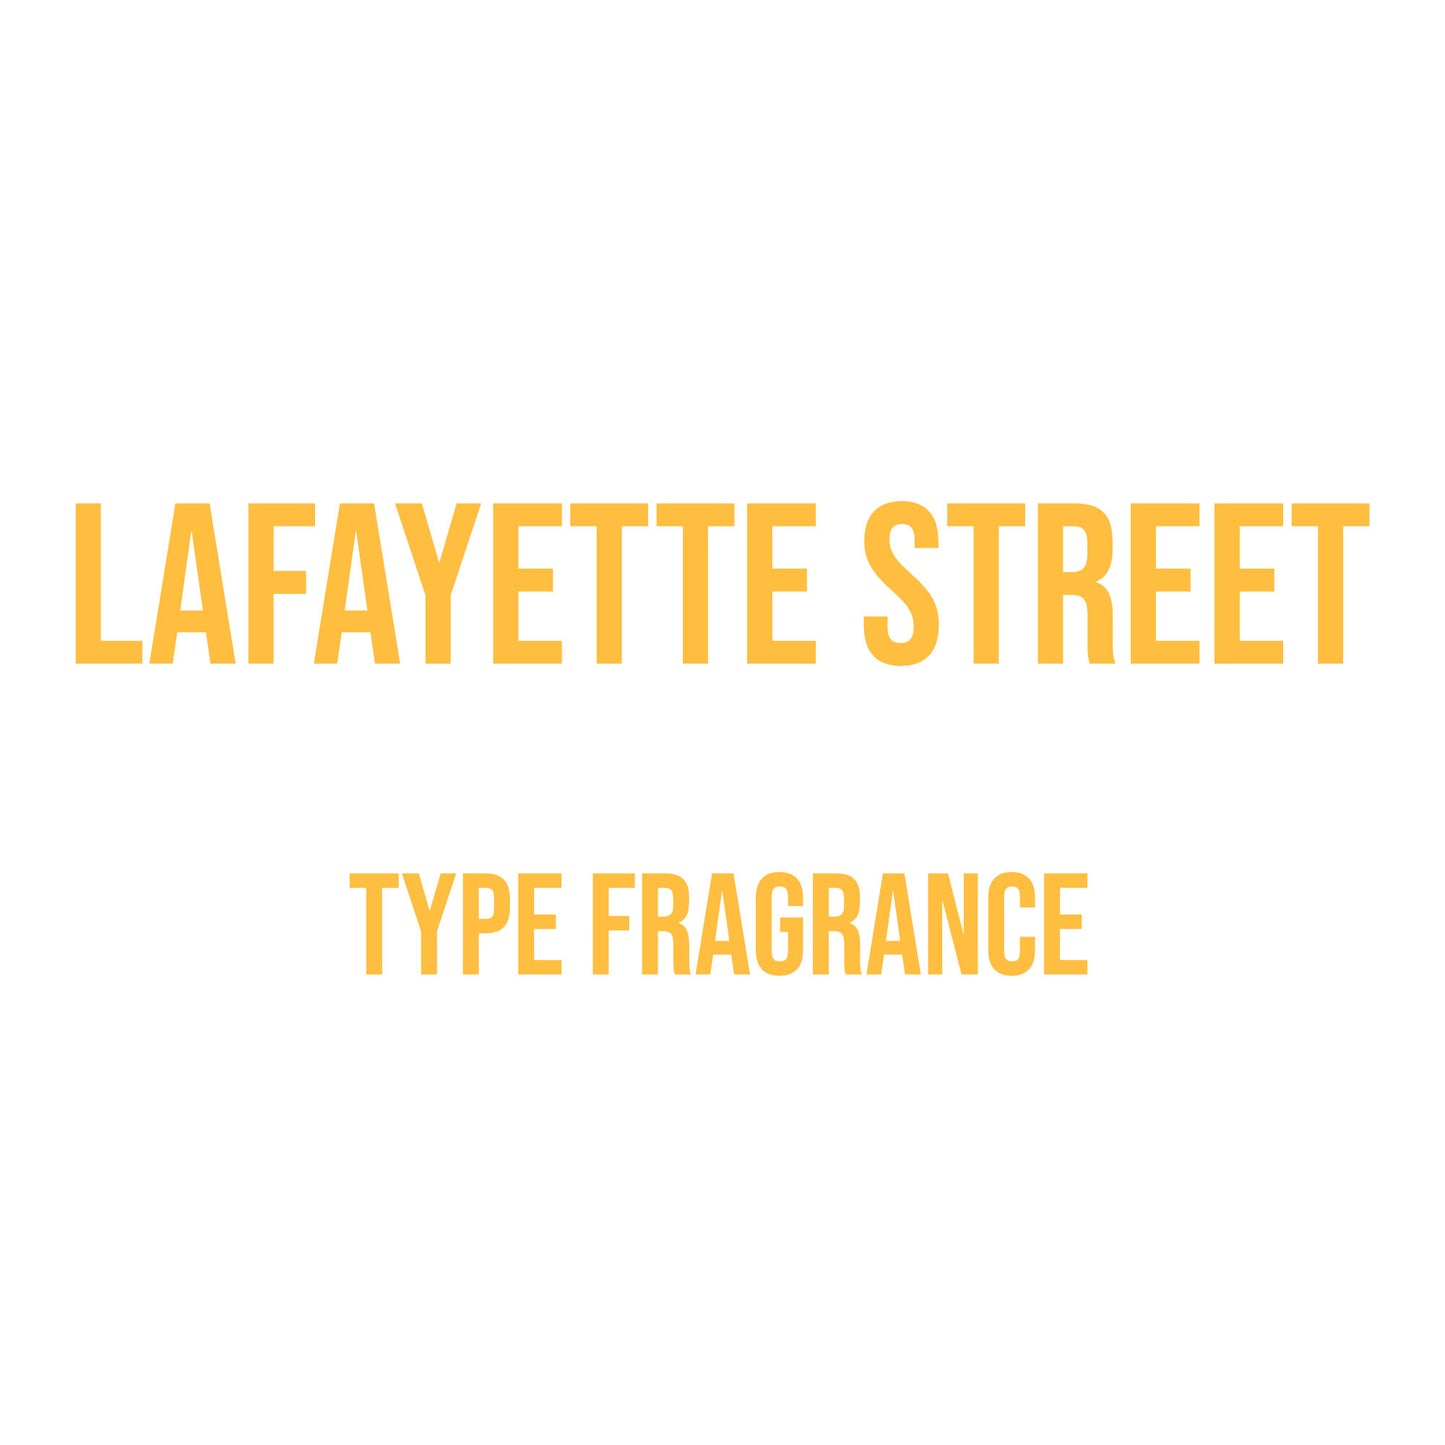 Lafayette Street Type Fragrance